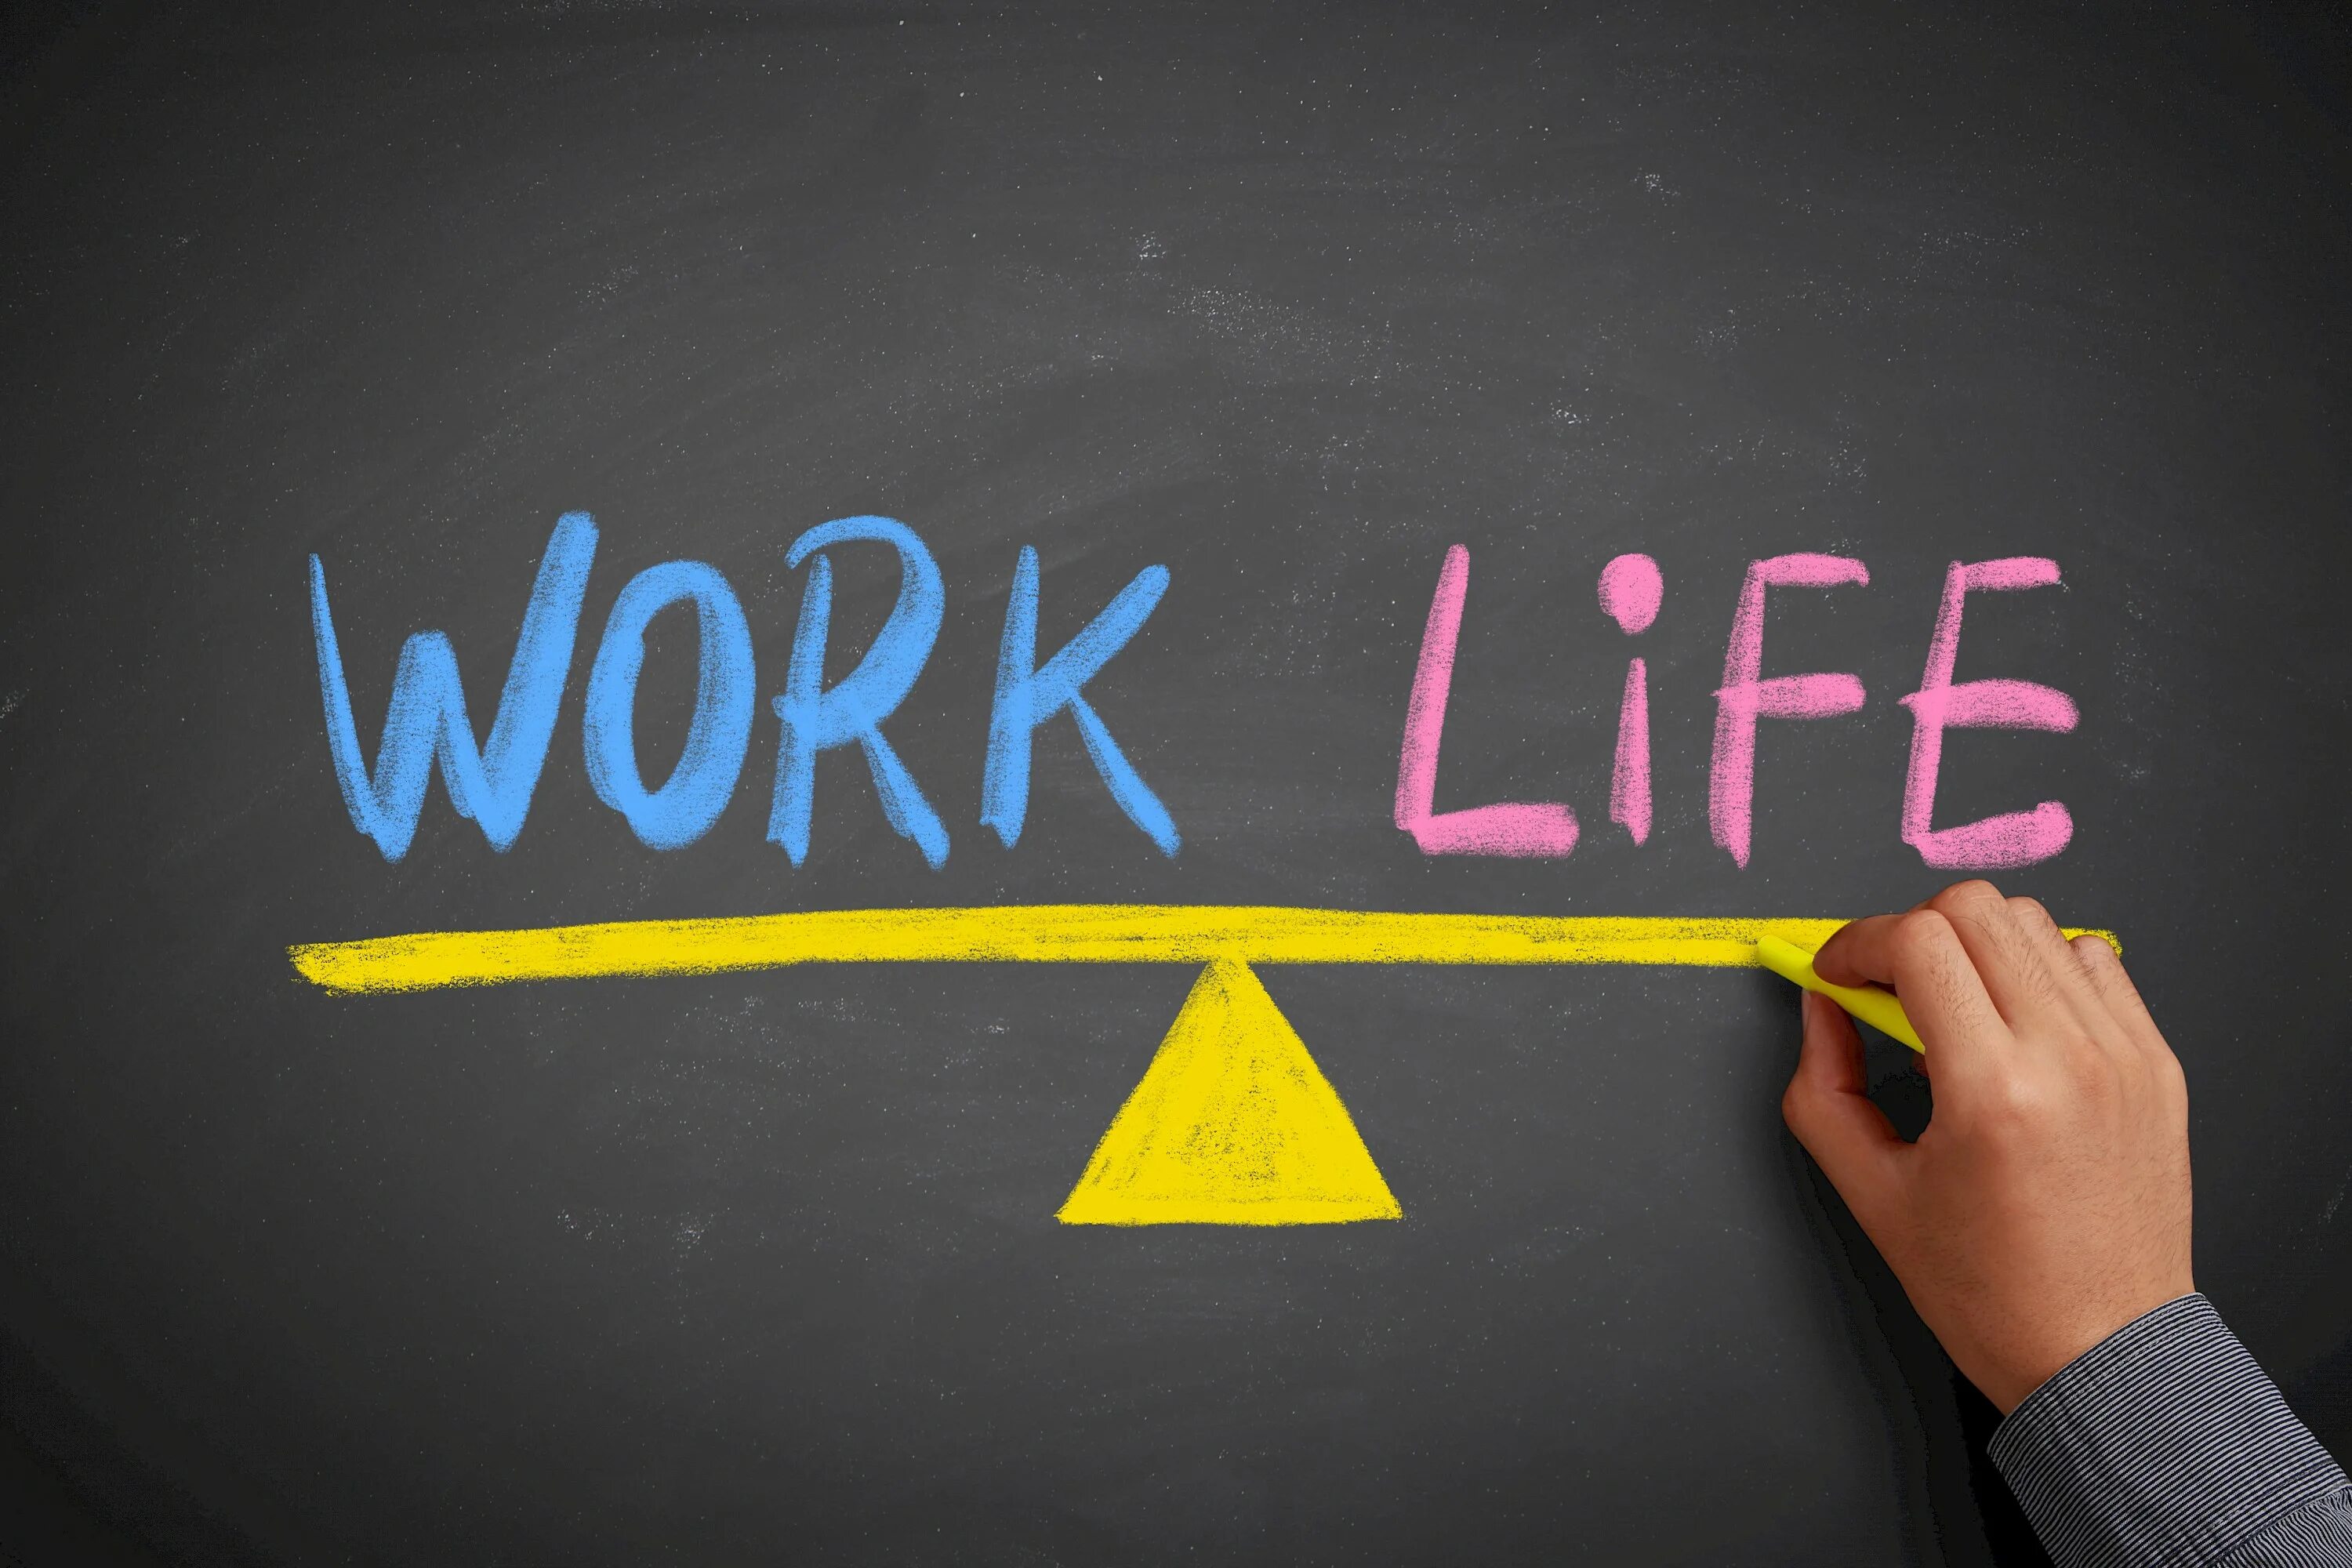 Life is a balance. Work-Life Balance. Баланс между работой и личной жизнью. Баланс между жизнью и учебой. Баланс работа жизнь.